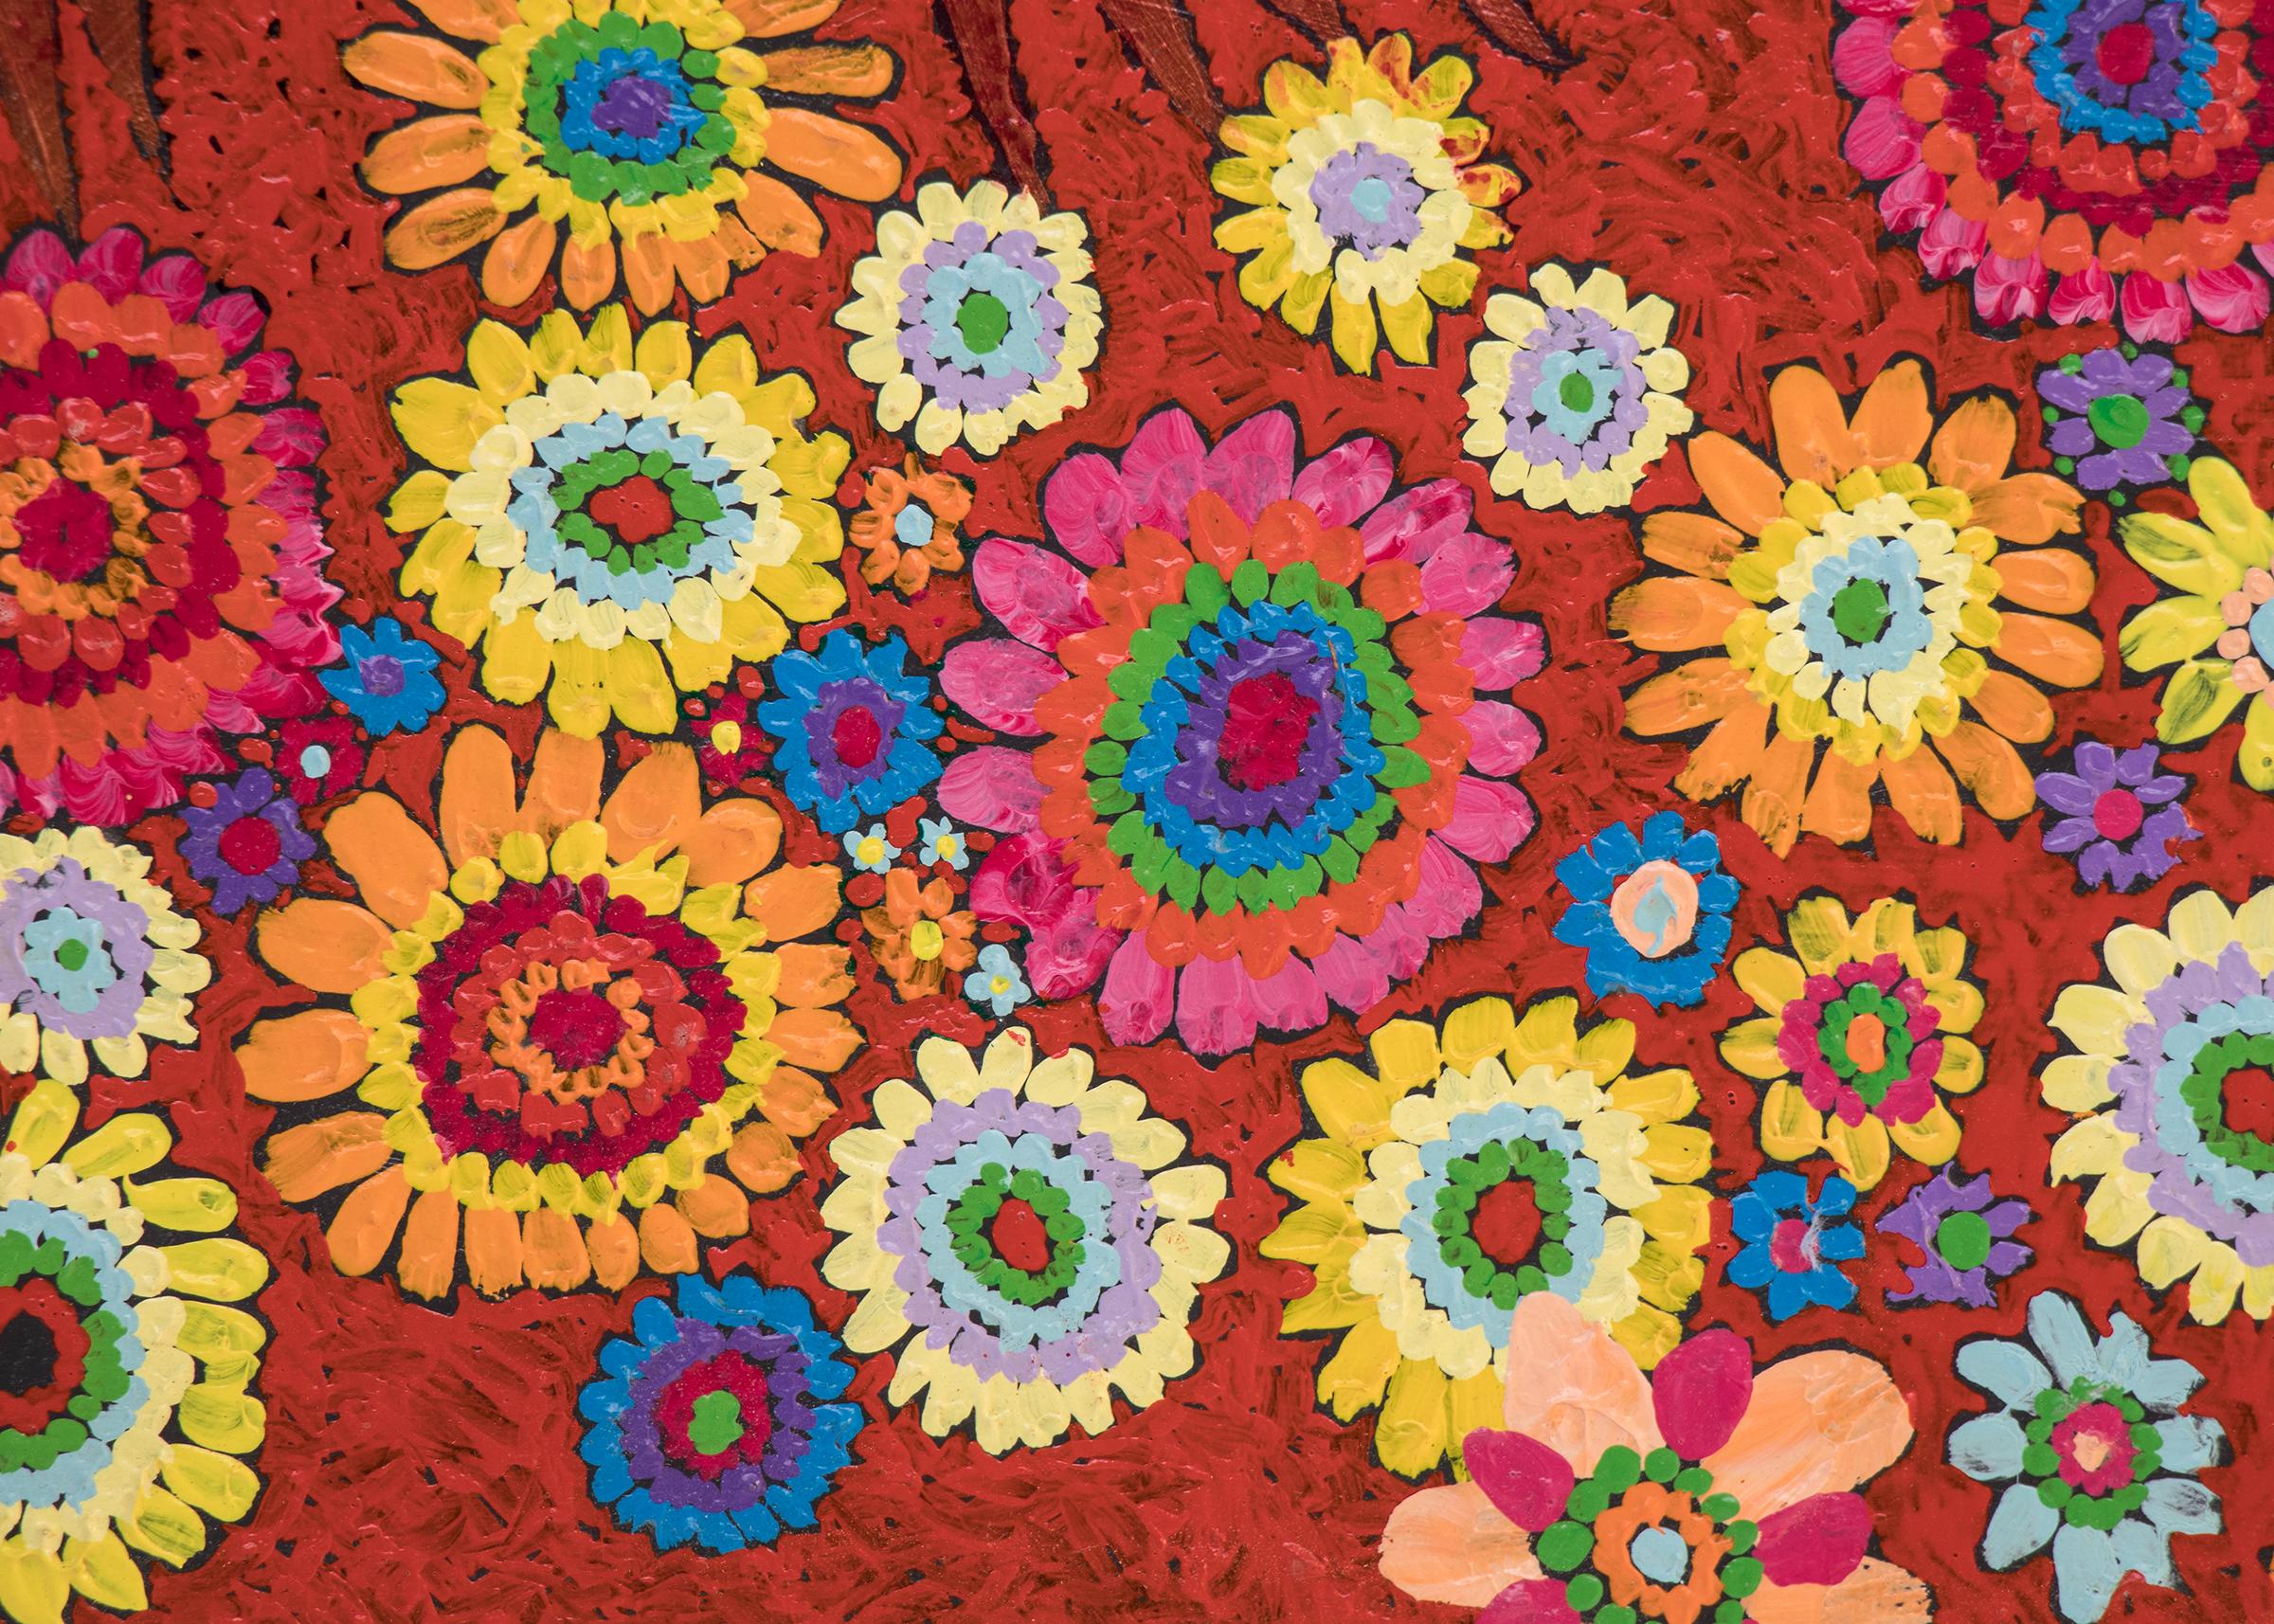 Masken und Blumen, Original-Ölgemälde auf Karton von Edward Marecak (1919-1993) aus dem Jahr 1984, halbabstraktes Gemälde im kubistischen Stil mit Stammesmasken und Blumen, gemalt in den Farben Rot, Gelb, Rosa, Grün, Blau, Orange, Lila und Schwarz.